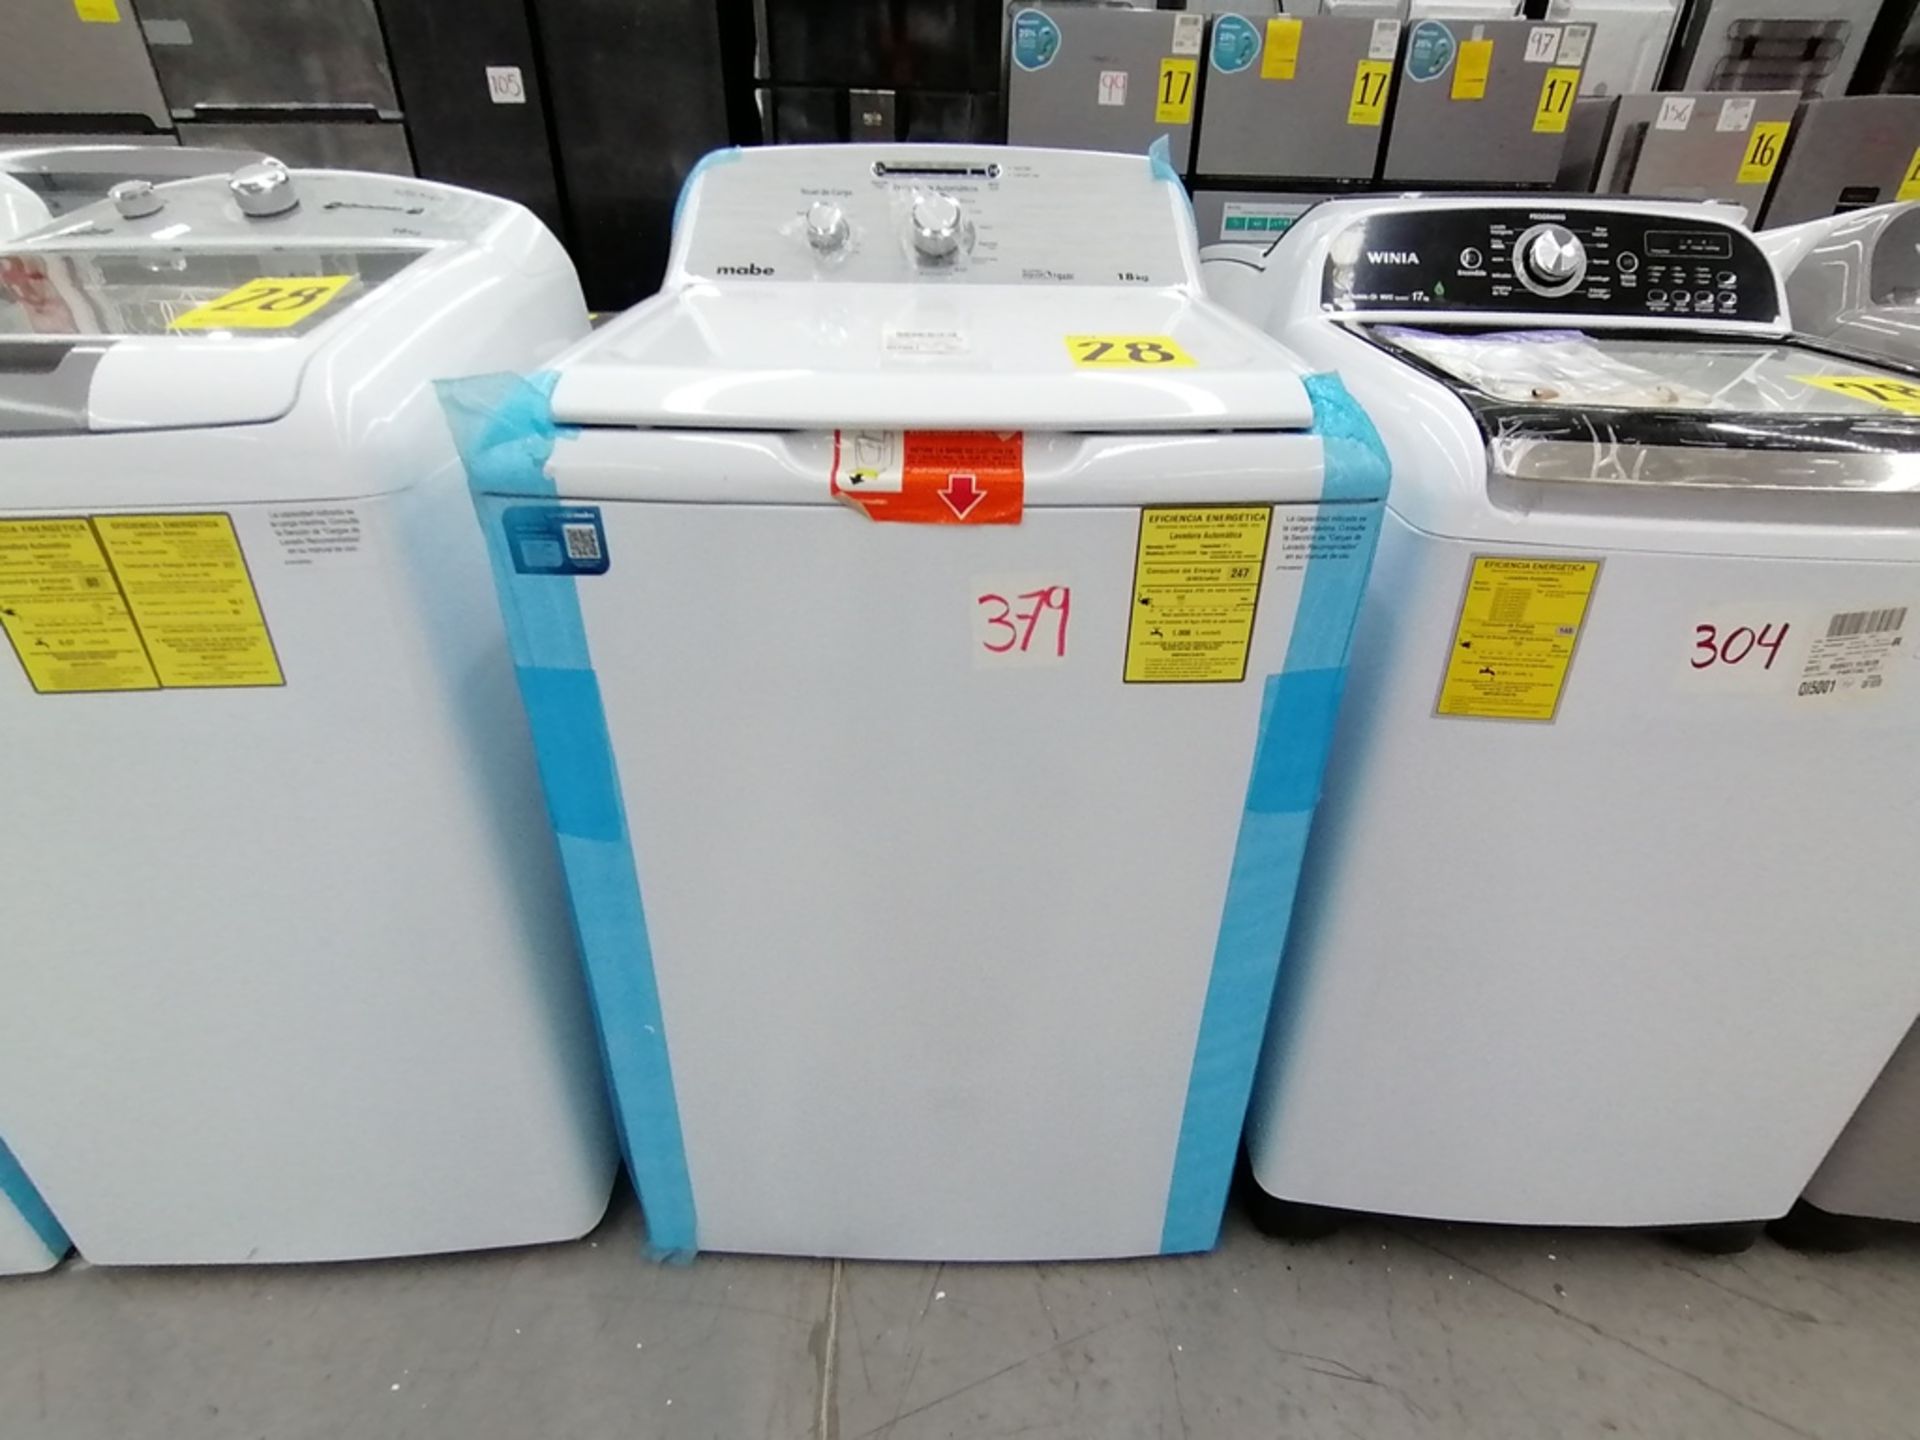 Lote de 3 lavadoras contiene: 1 Lavadora de 16KG, Marca Mabe, Modelo LMA46102VBAB02, Serie 2108S802 - Image 21 of 29